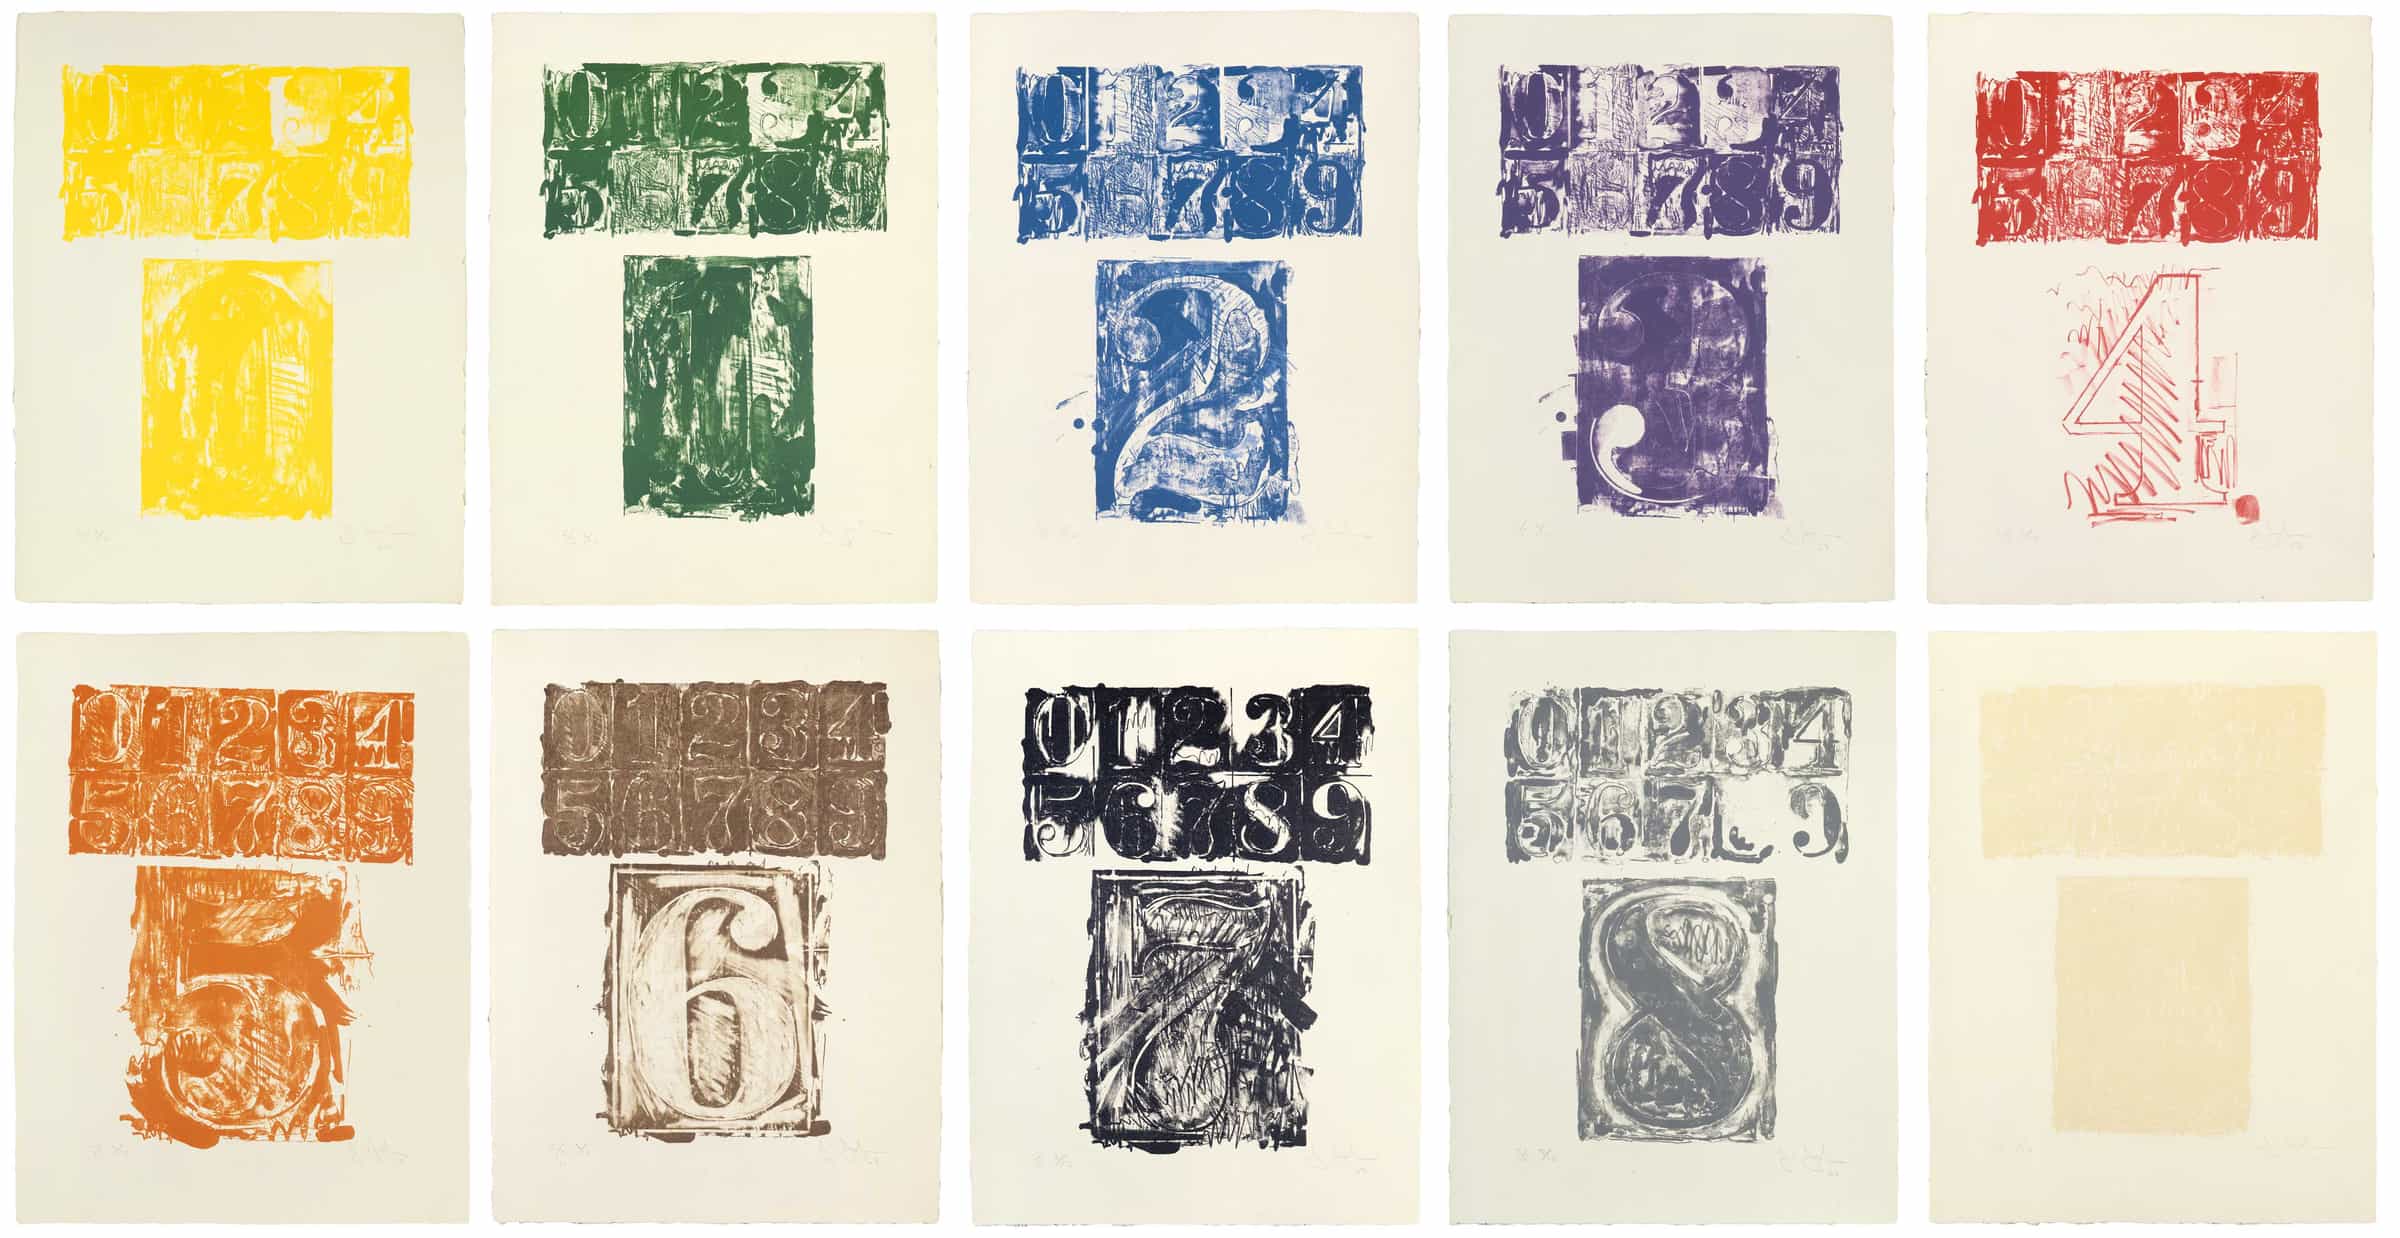 Jasper Johns, 0-9 (Color), 1963